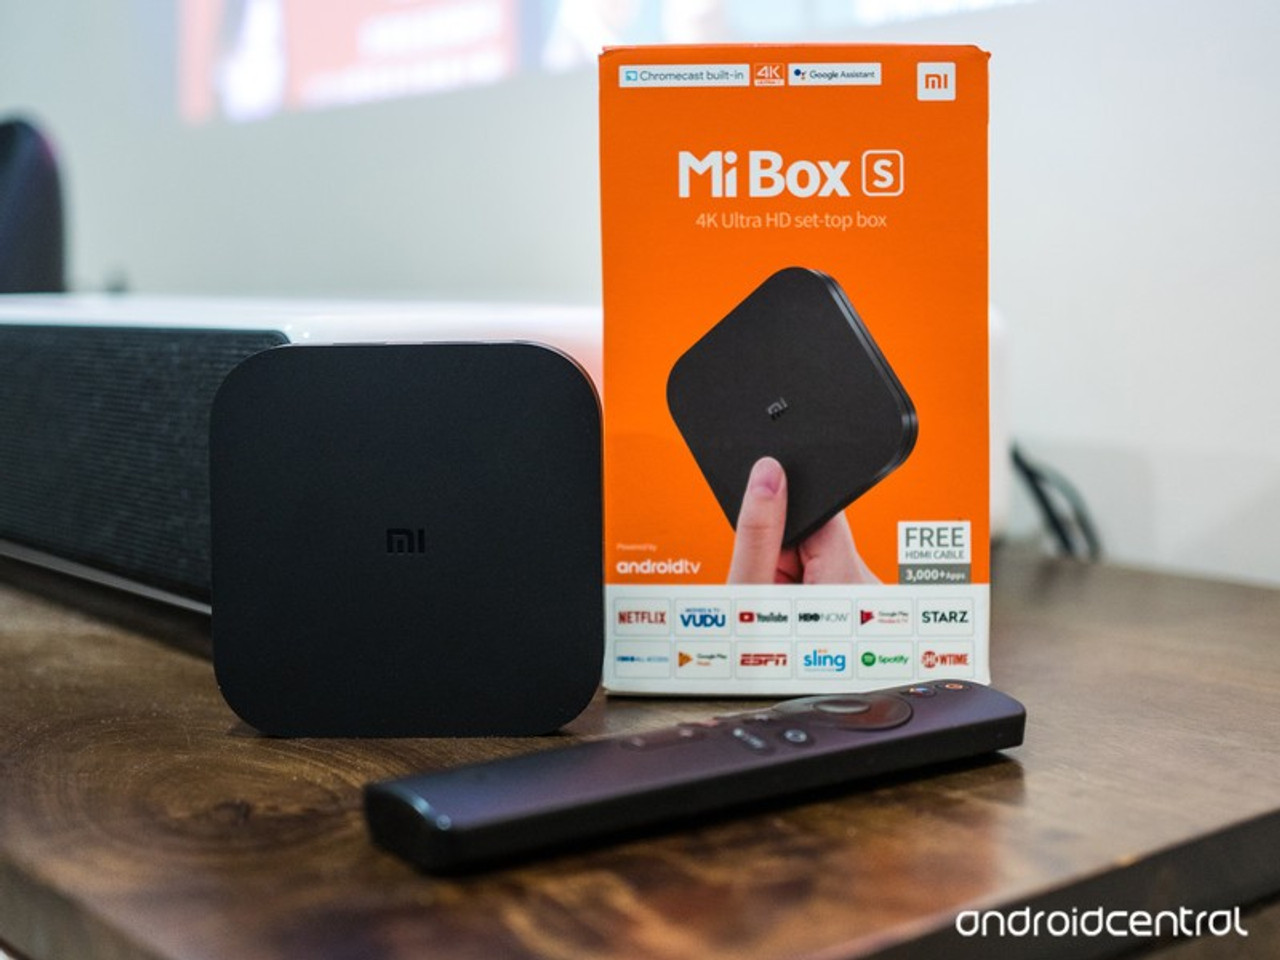 Xiaomi Mi Box 4K Ultra HDR Android TV Box Voice Search Remote Smart Media  Player